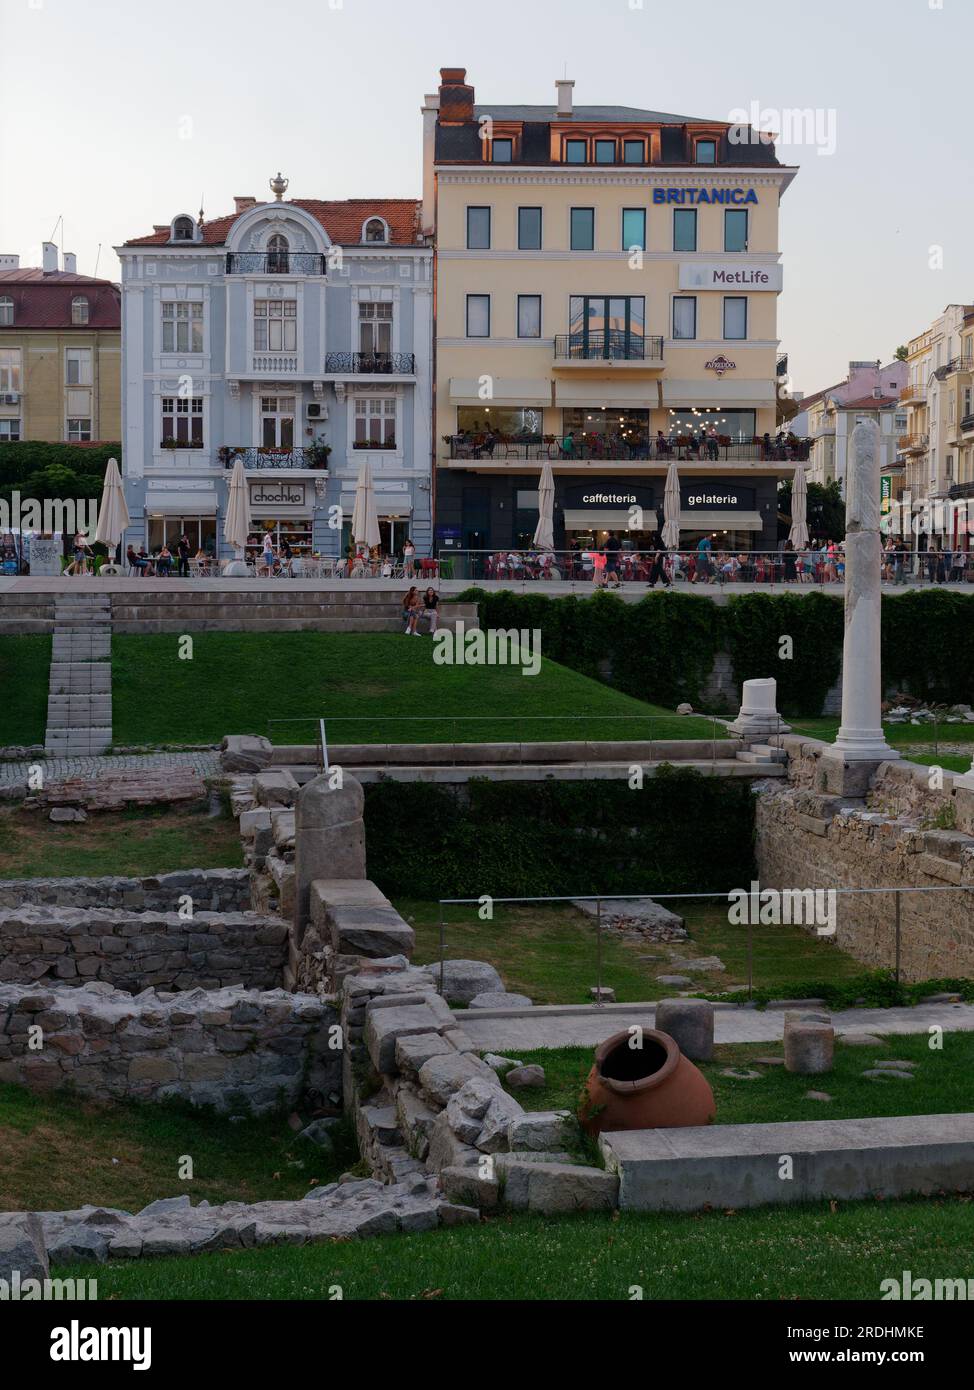 Plovdiv, Bulgarien, die älteste Stadt und die längste Fußgängerzone Europas. Römische Ruinen in der Hauptstraße, die auch ein teilweise ausgegrabenes Stadion hat. Stockfoto